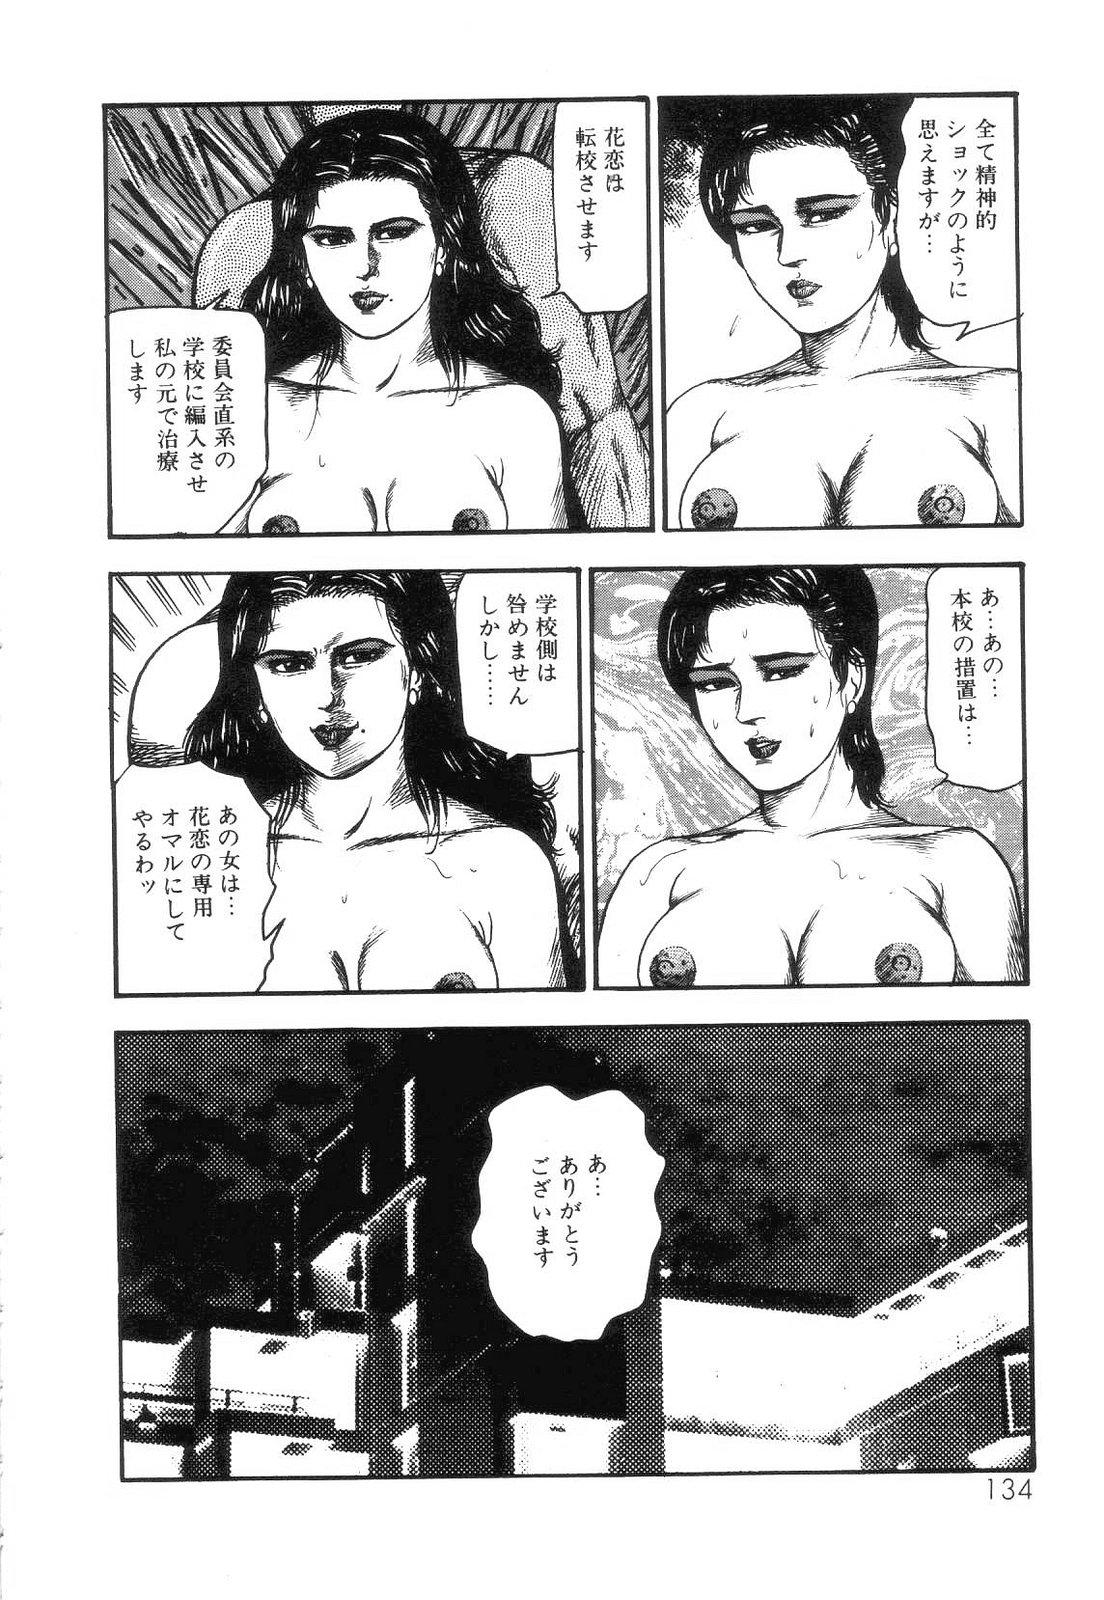 Shiro no Mokushiroku Vol. 4 - Bichiku Karen no Shou 135